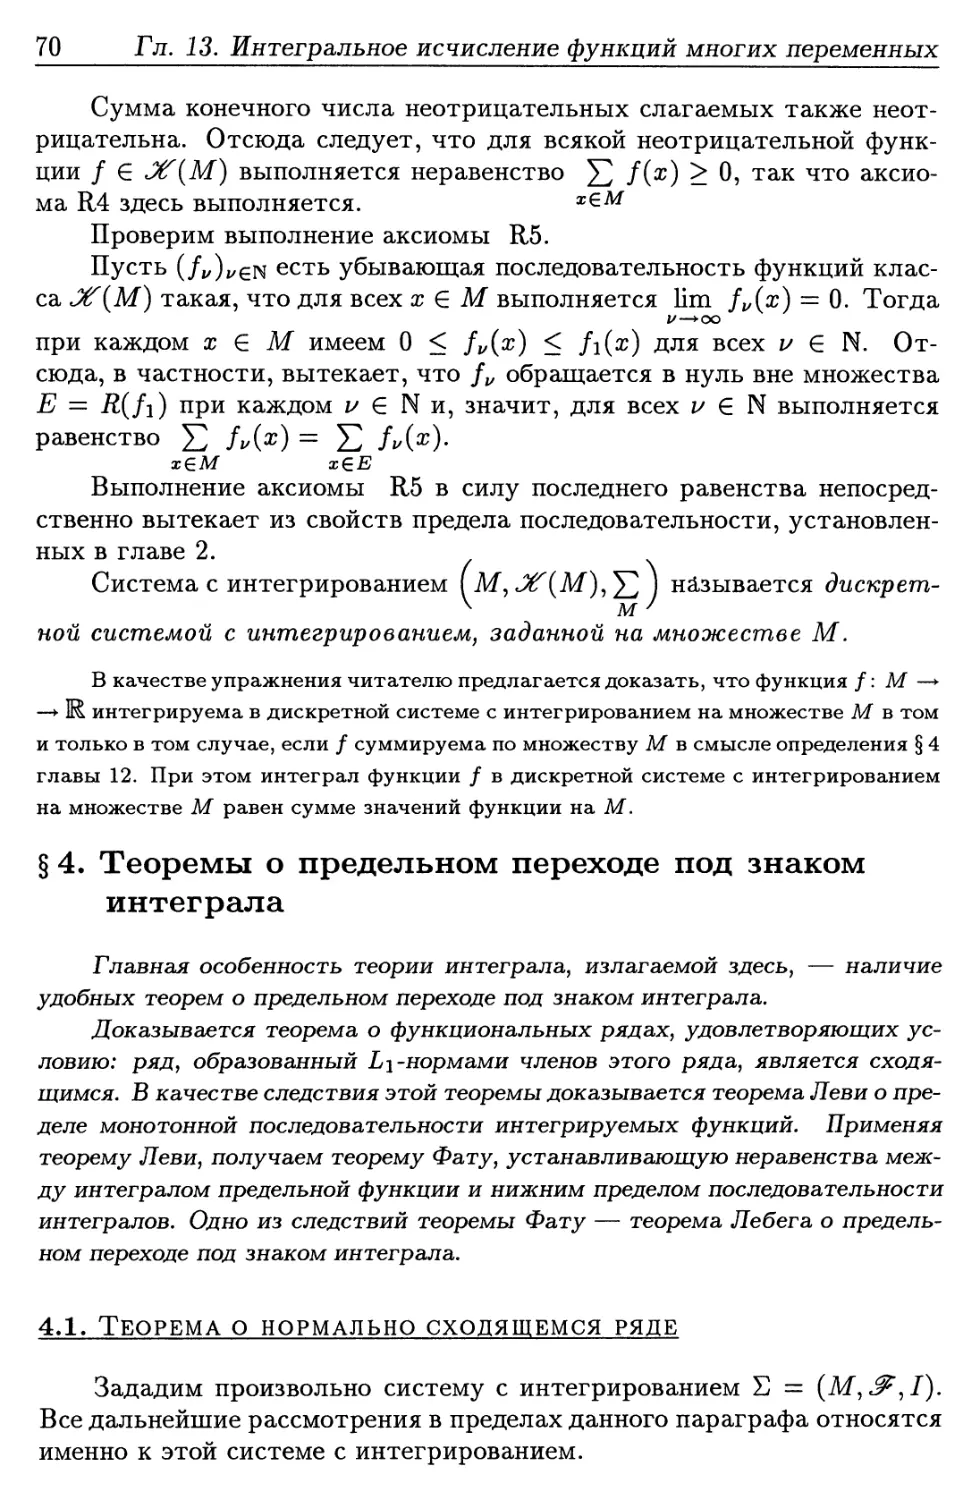 § 4. Теоремы о предельном переходе под знаком интеграла